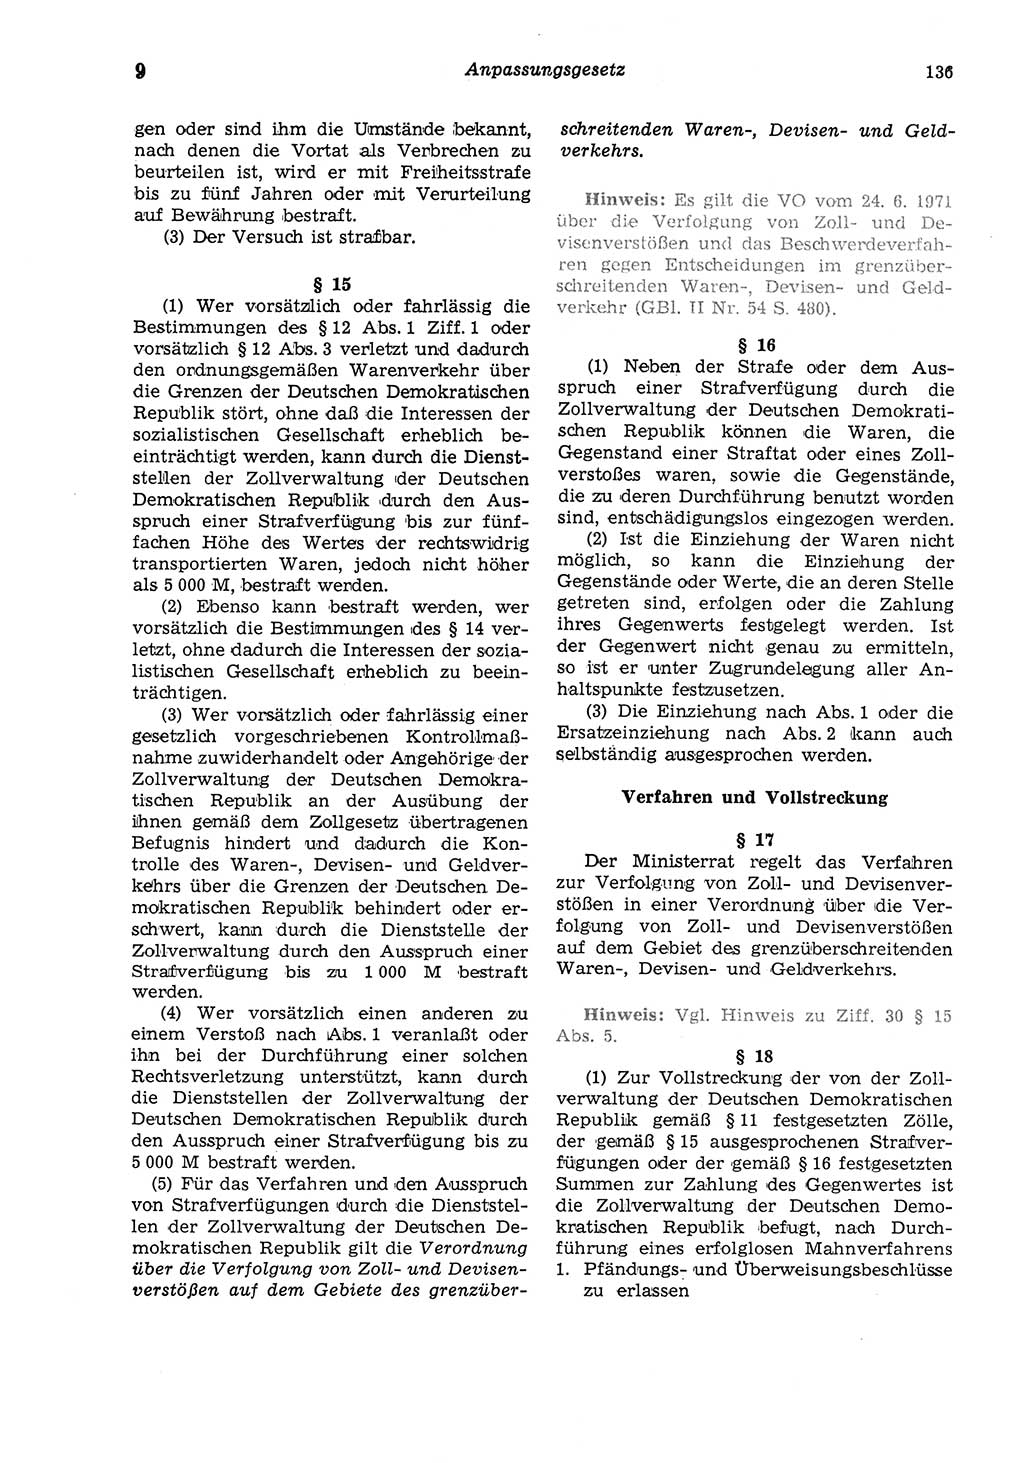 Strafgesetzbuch (StGB) der Deutschen Demokratischen Republik (DDR) und angrenzende Gesetze und Bestimmungen 1975, Seite 136 (StGB DDR Ges. Best. 1975, S. 136)